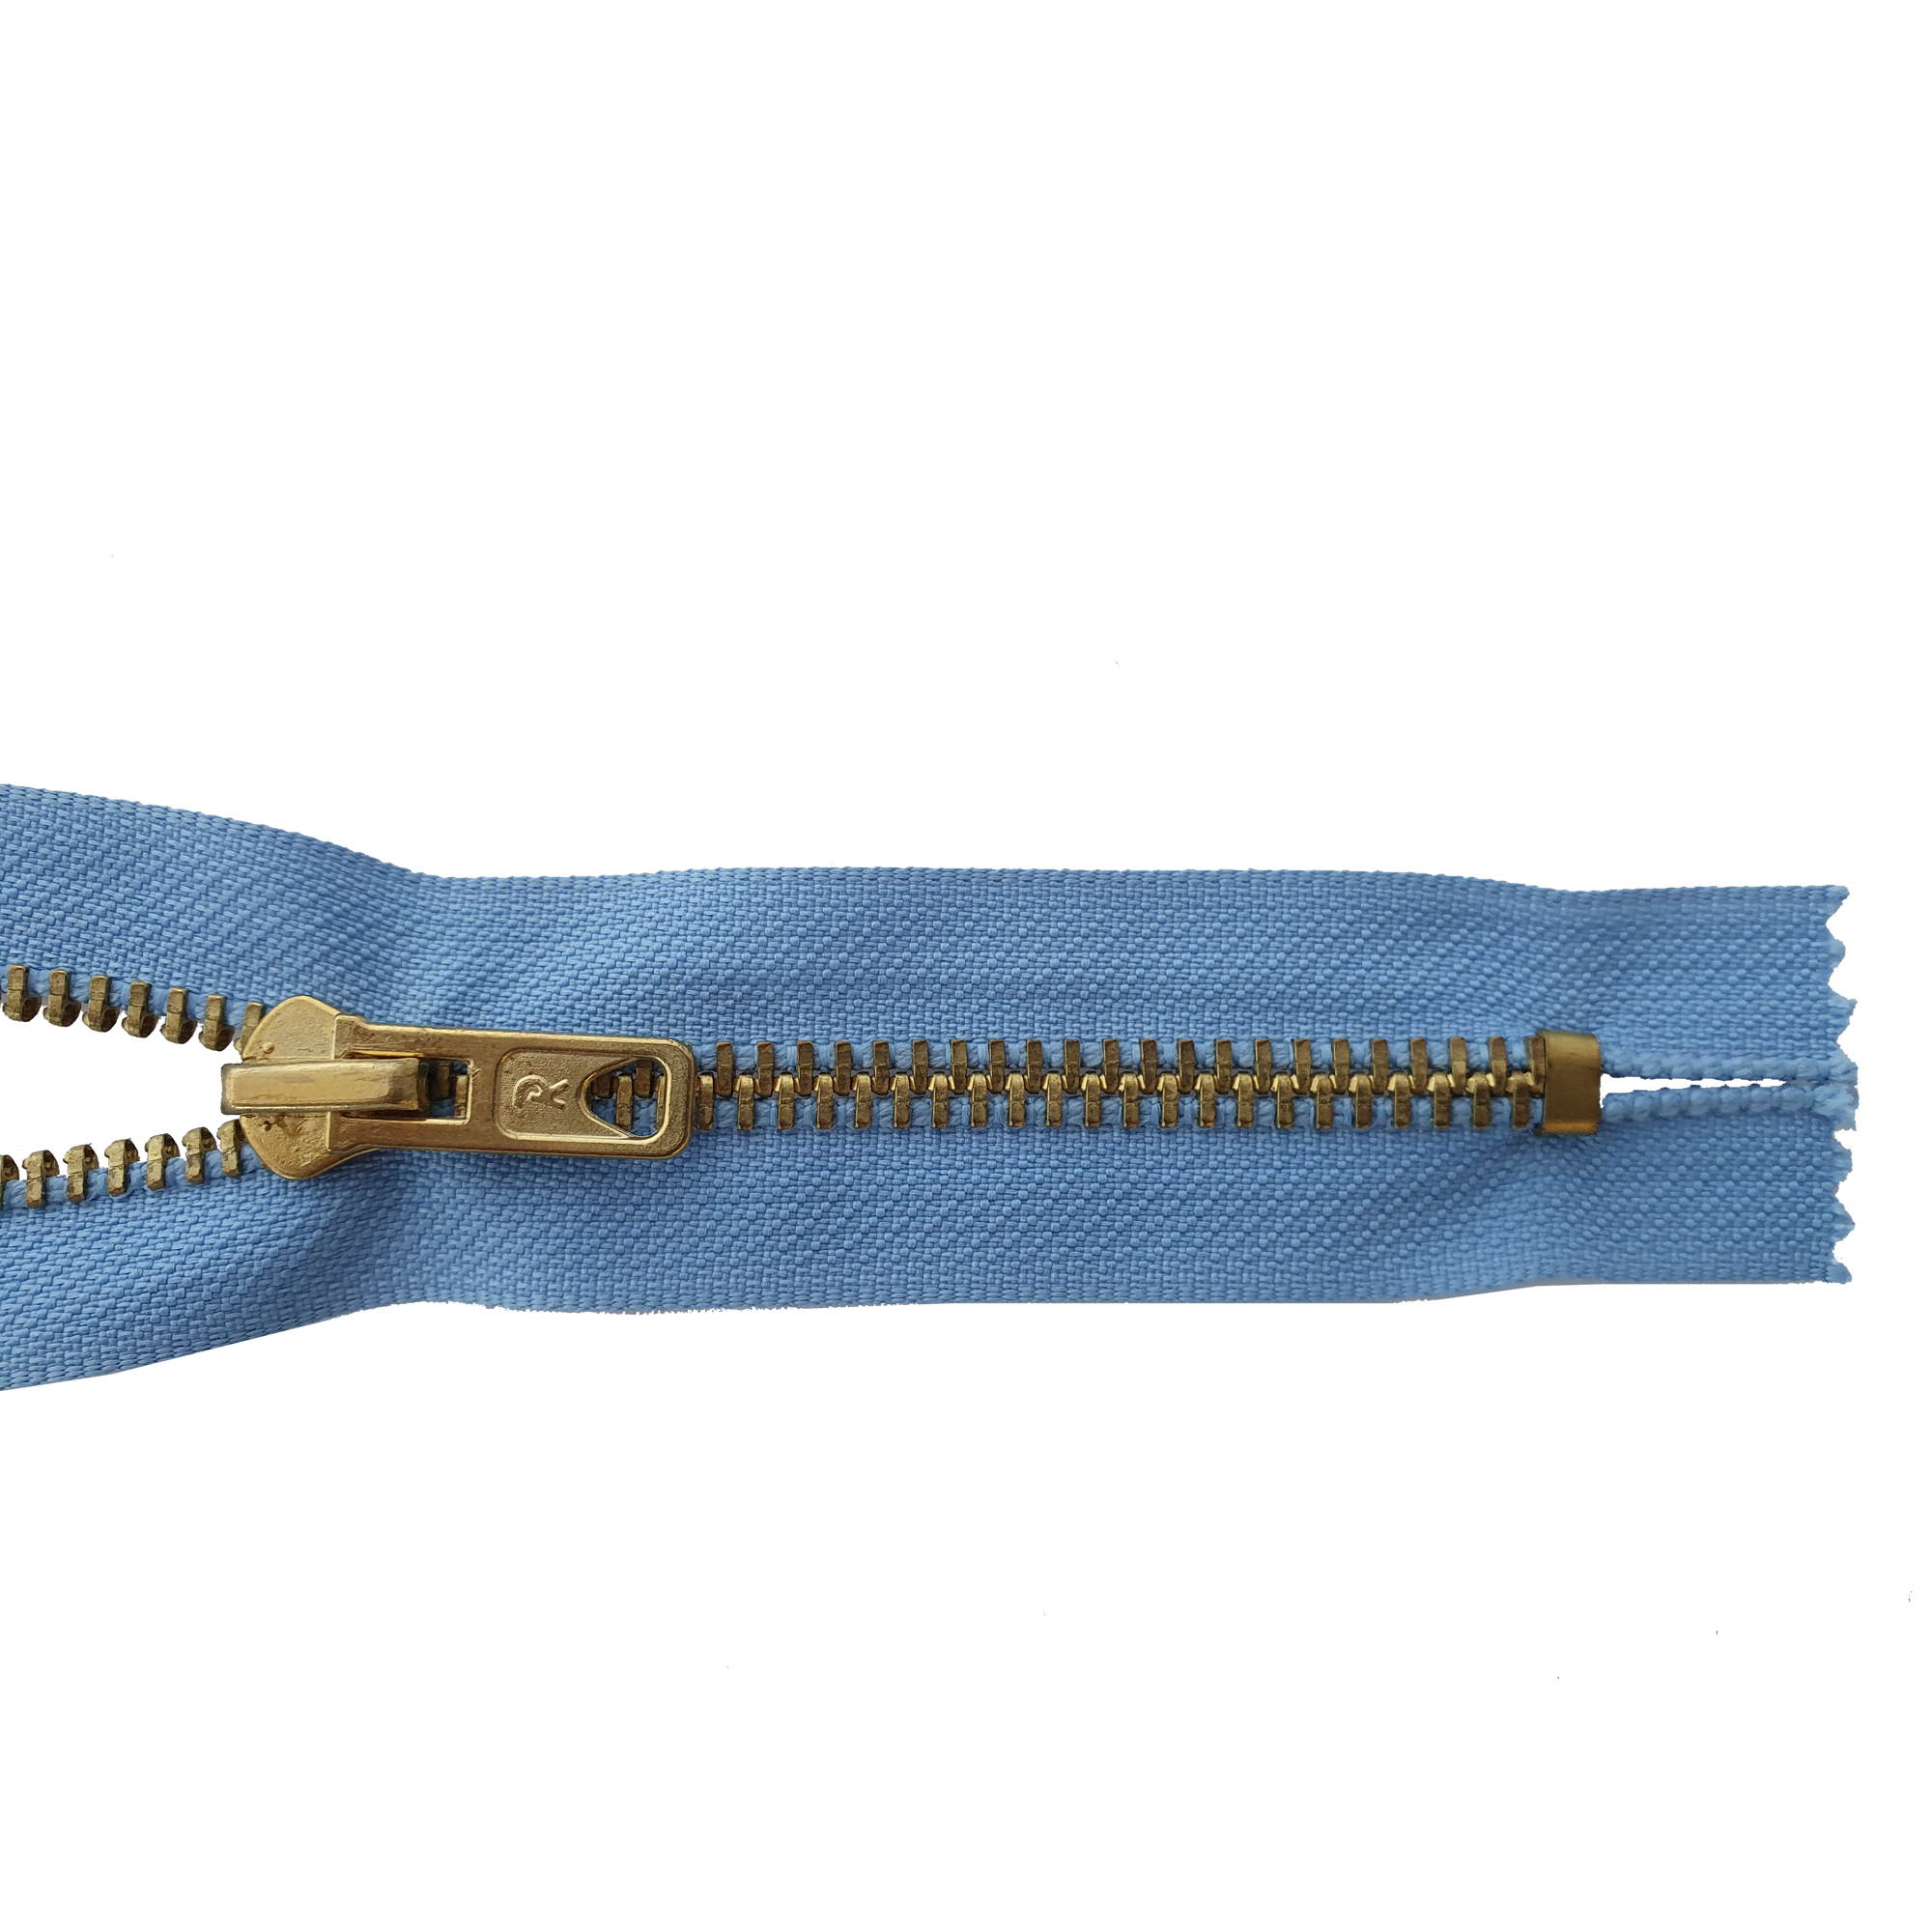 Reißverschluss 16cm, nicht teilbar, Metall goldf. breit, h.grau-blau, hochwertiger Marken-Reißverschluss von Rubi/Barcelona